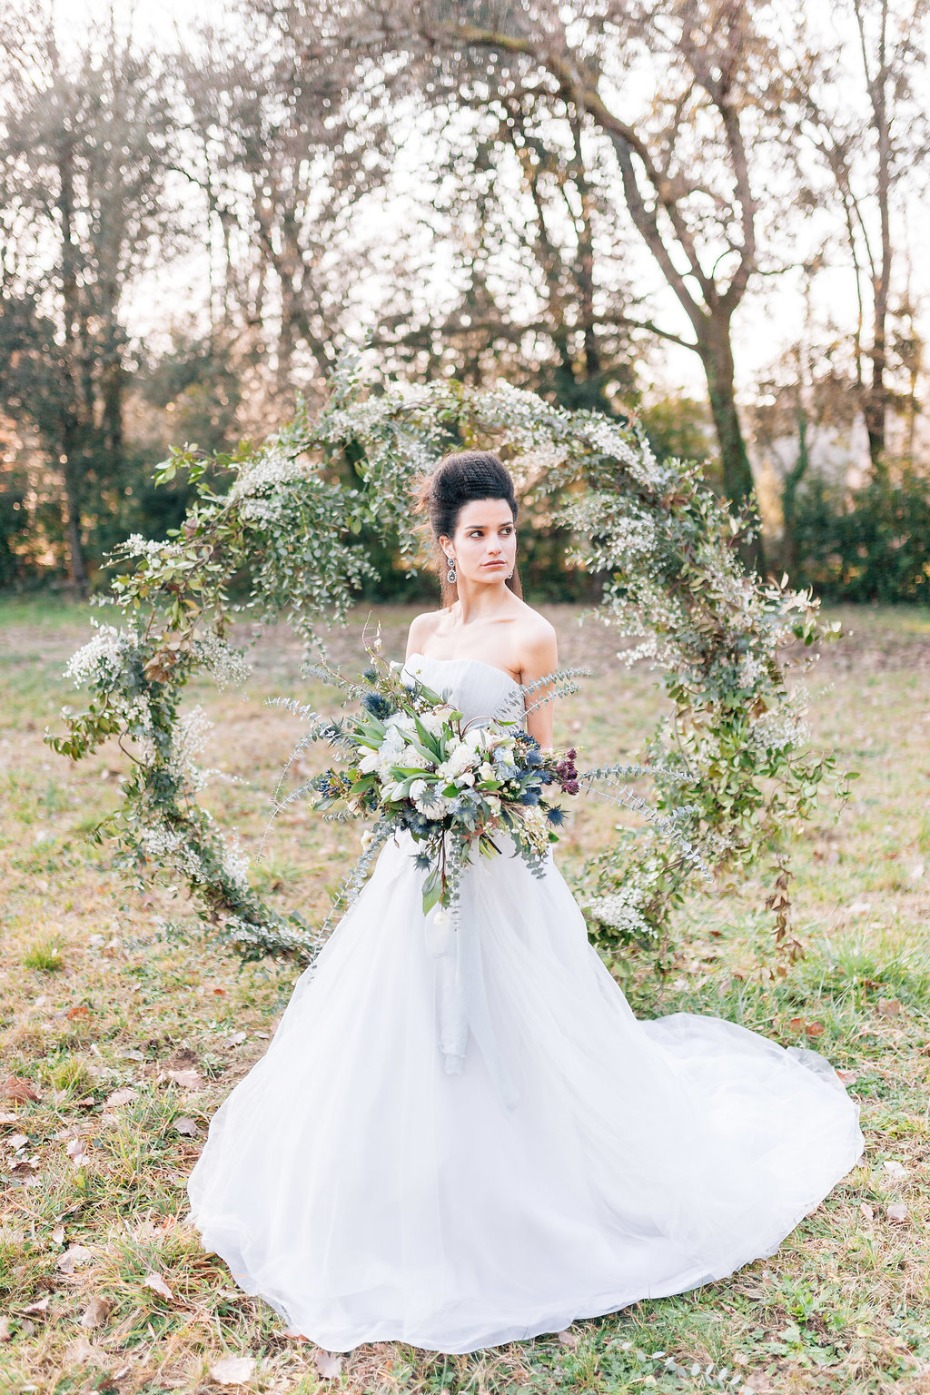 giant wedding wreath backdrop